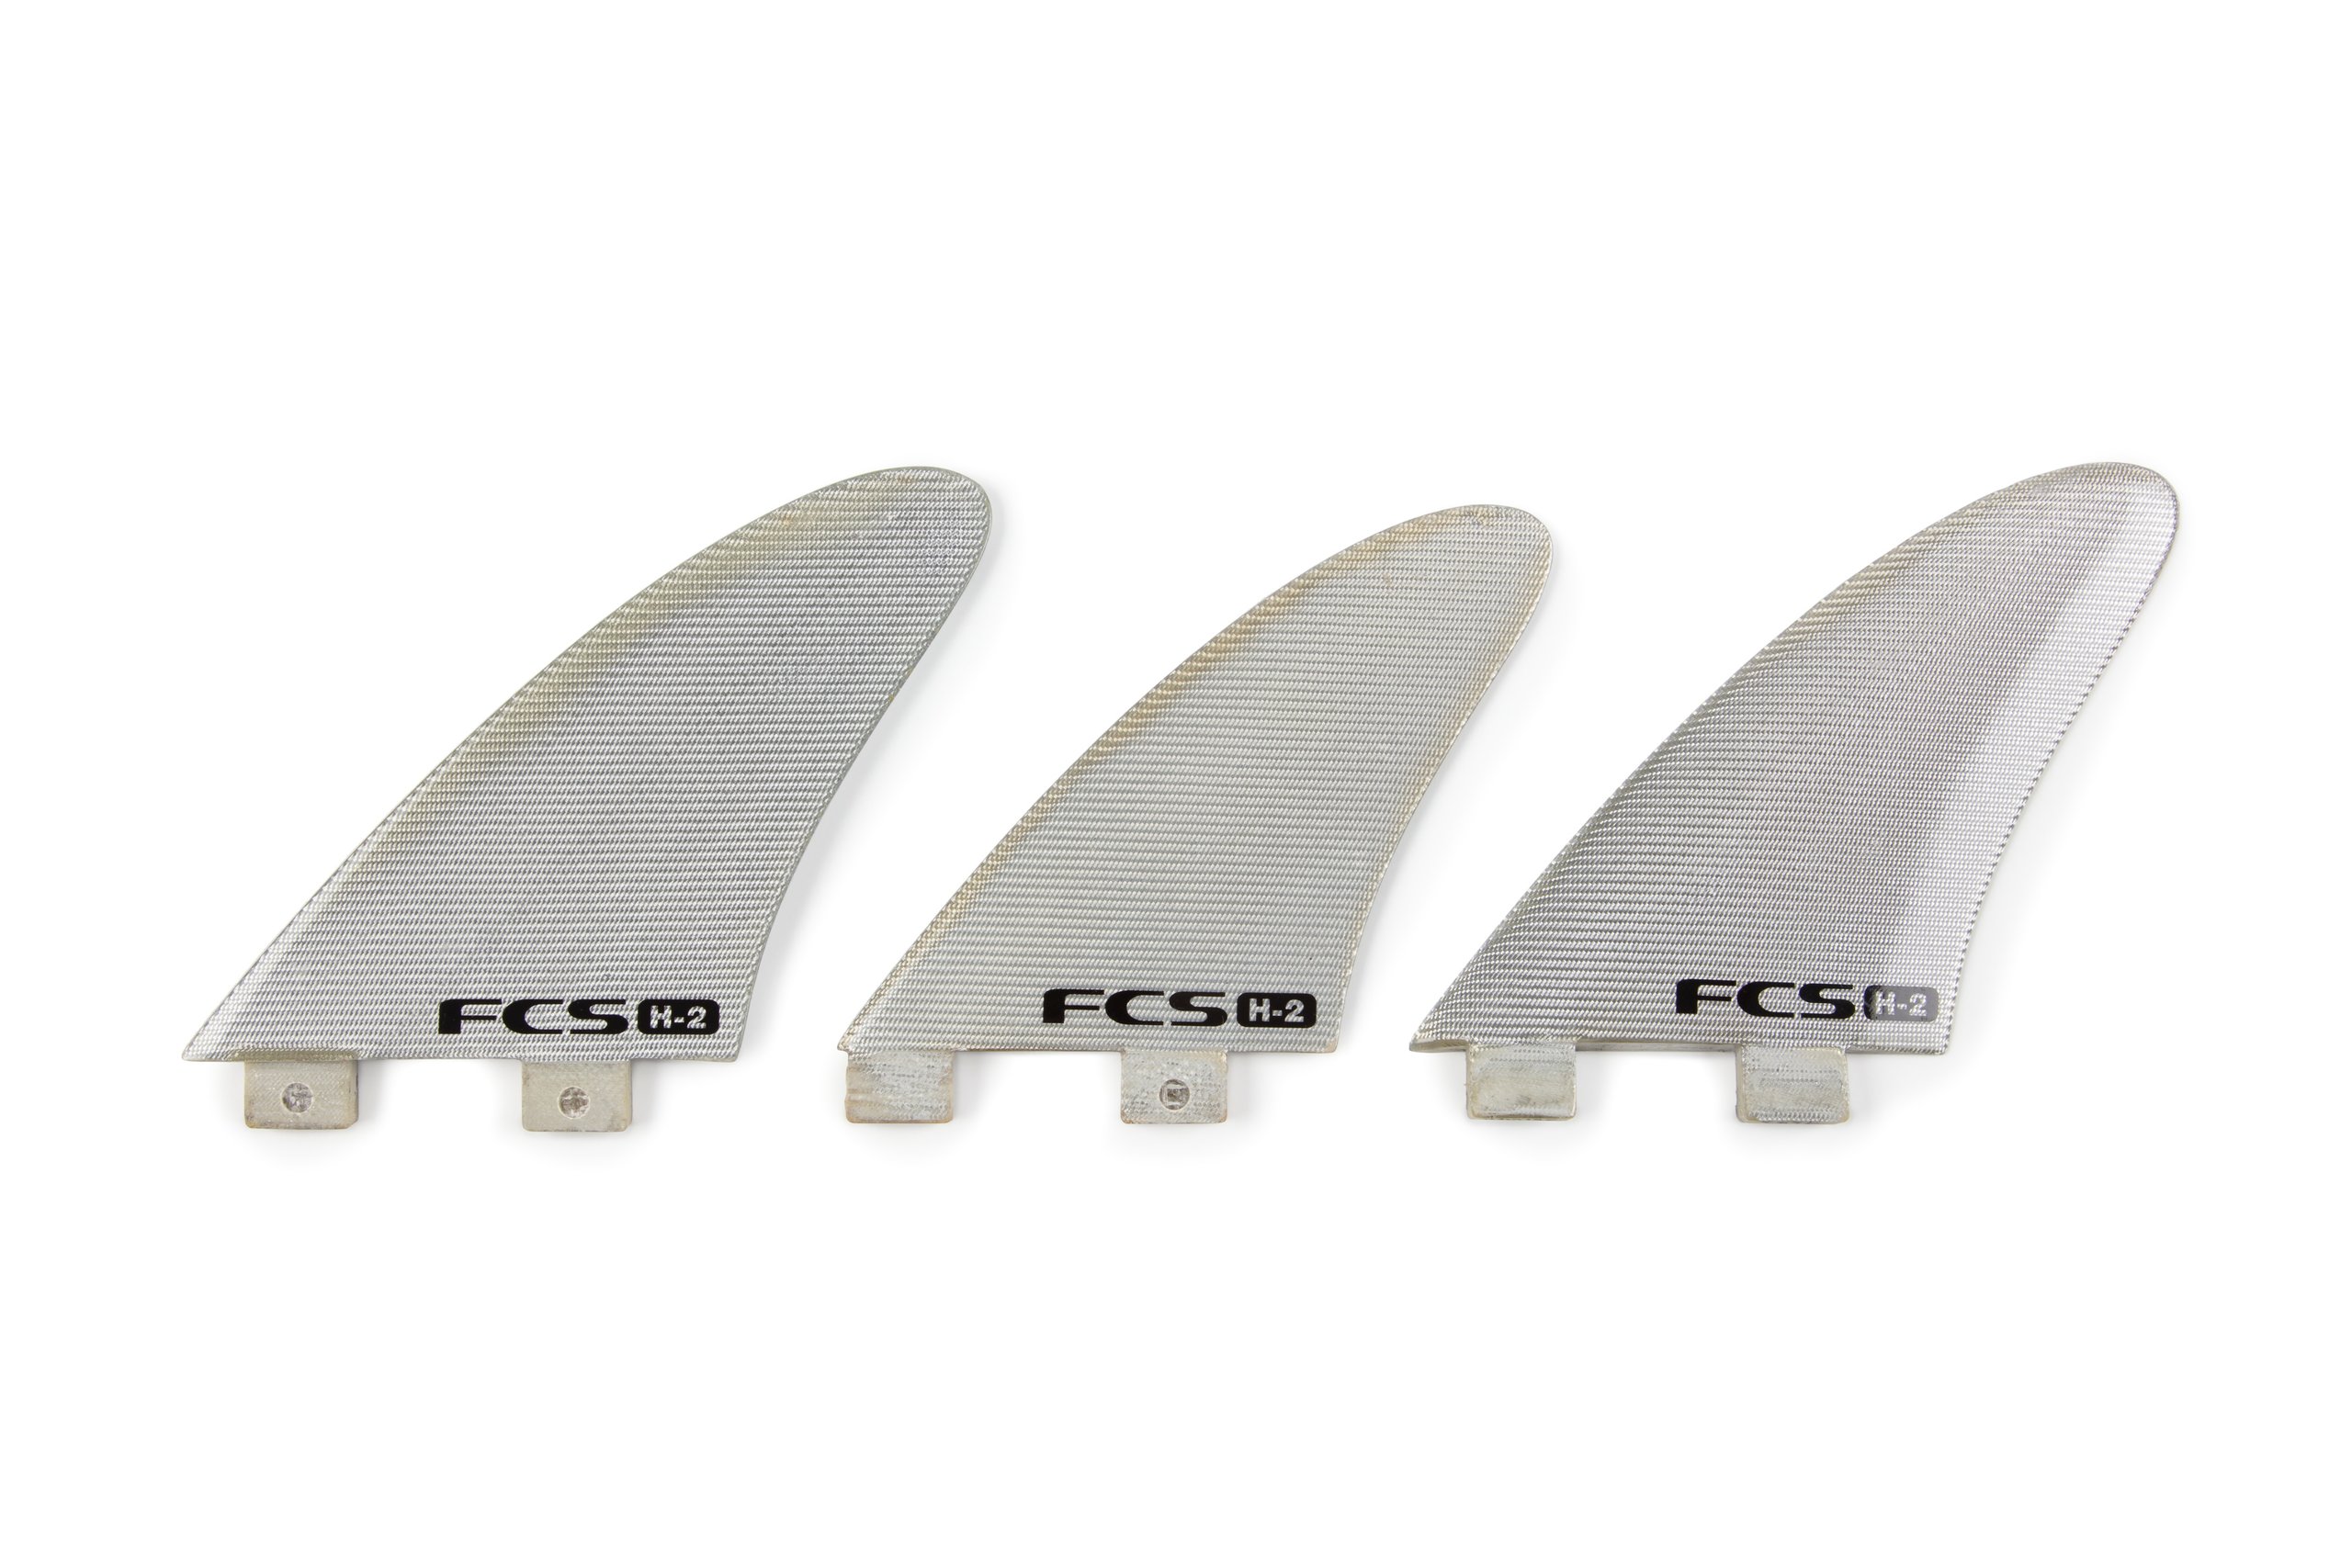 Three 'FCS H-2' surfboard fins